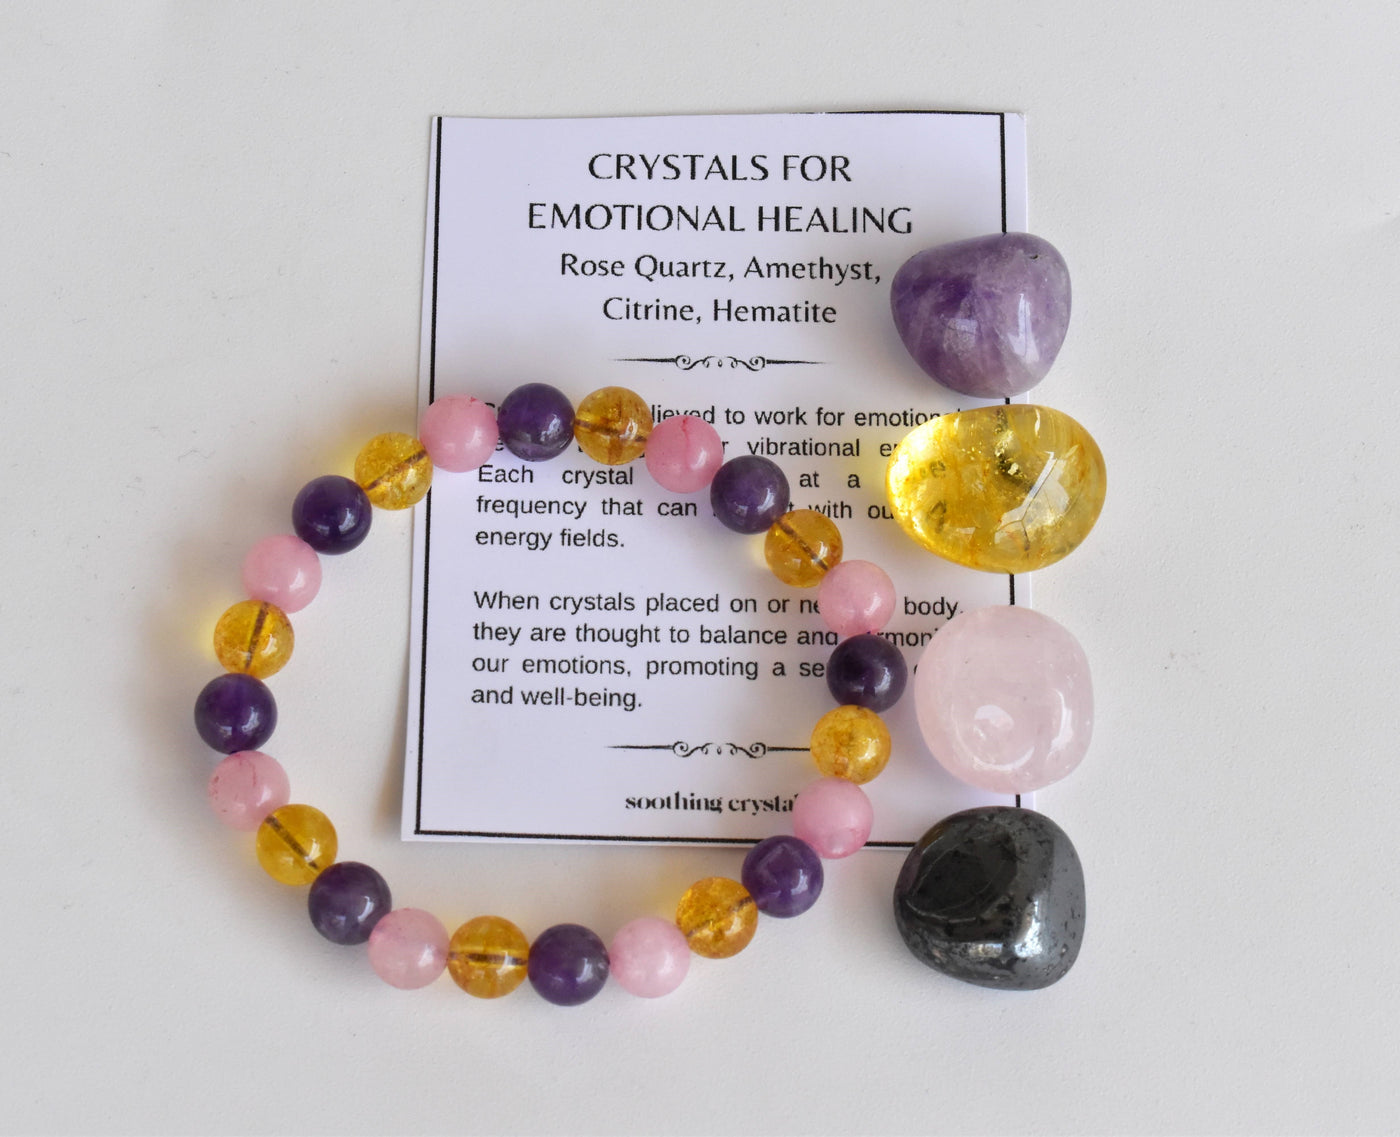 EMOTIONAL HEALING Crystal Kit, Gemstone Tumble Kit, Emotional Healing Crystal Gift Set